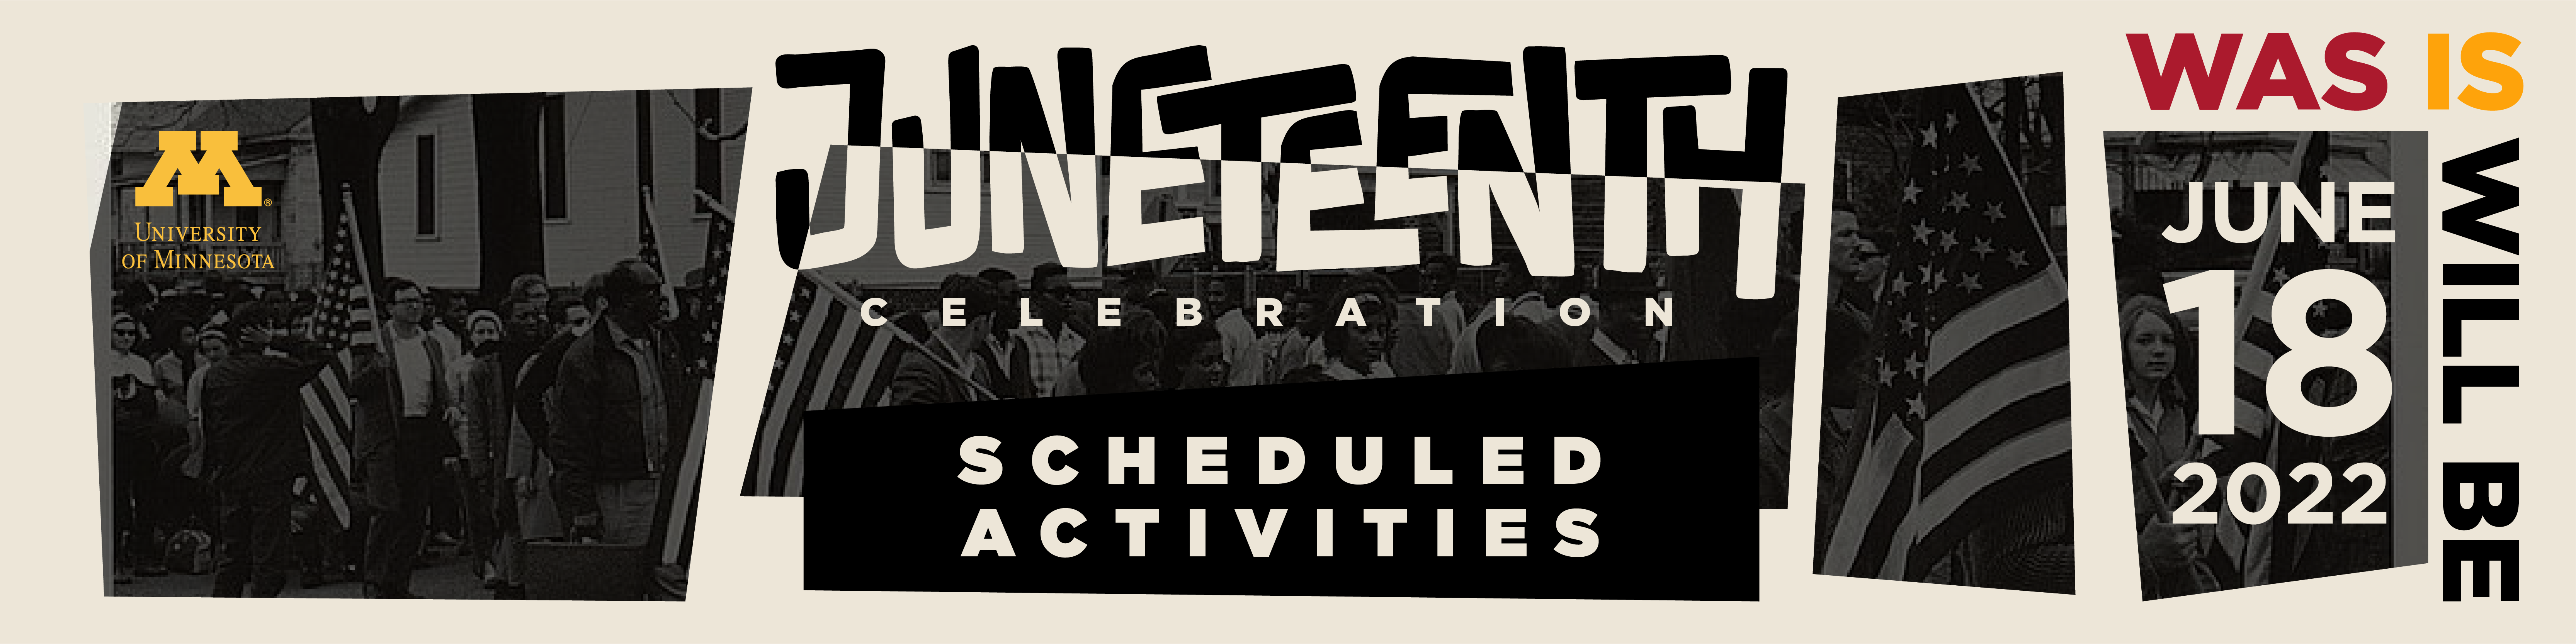 Juneteenth Scheduled Activities